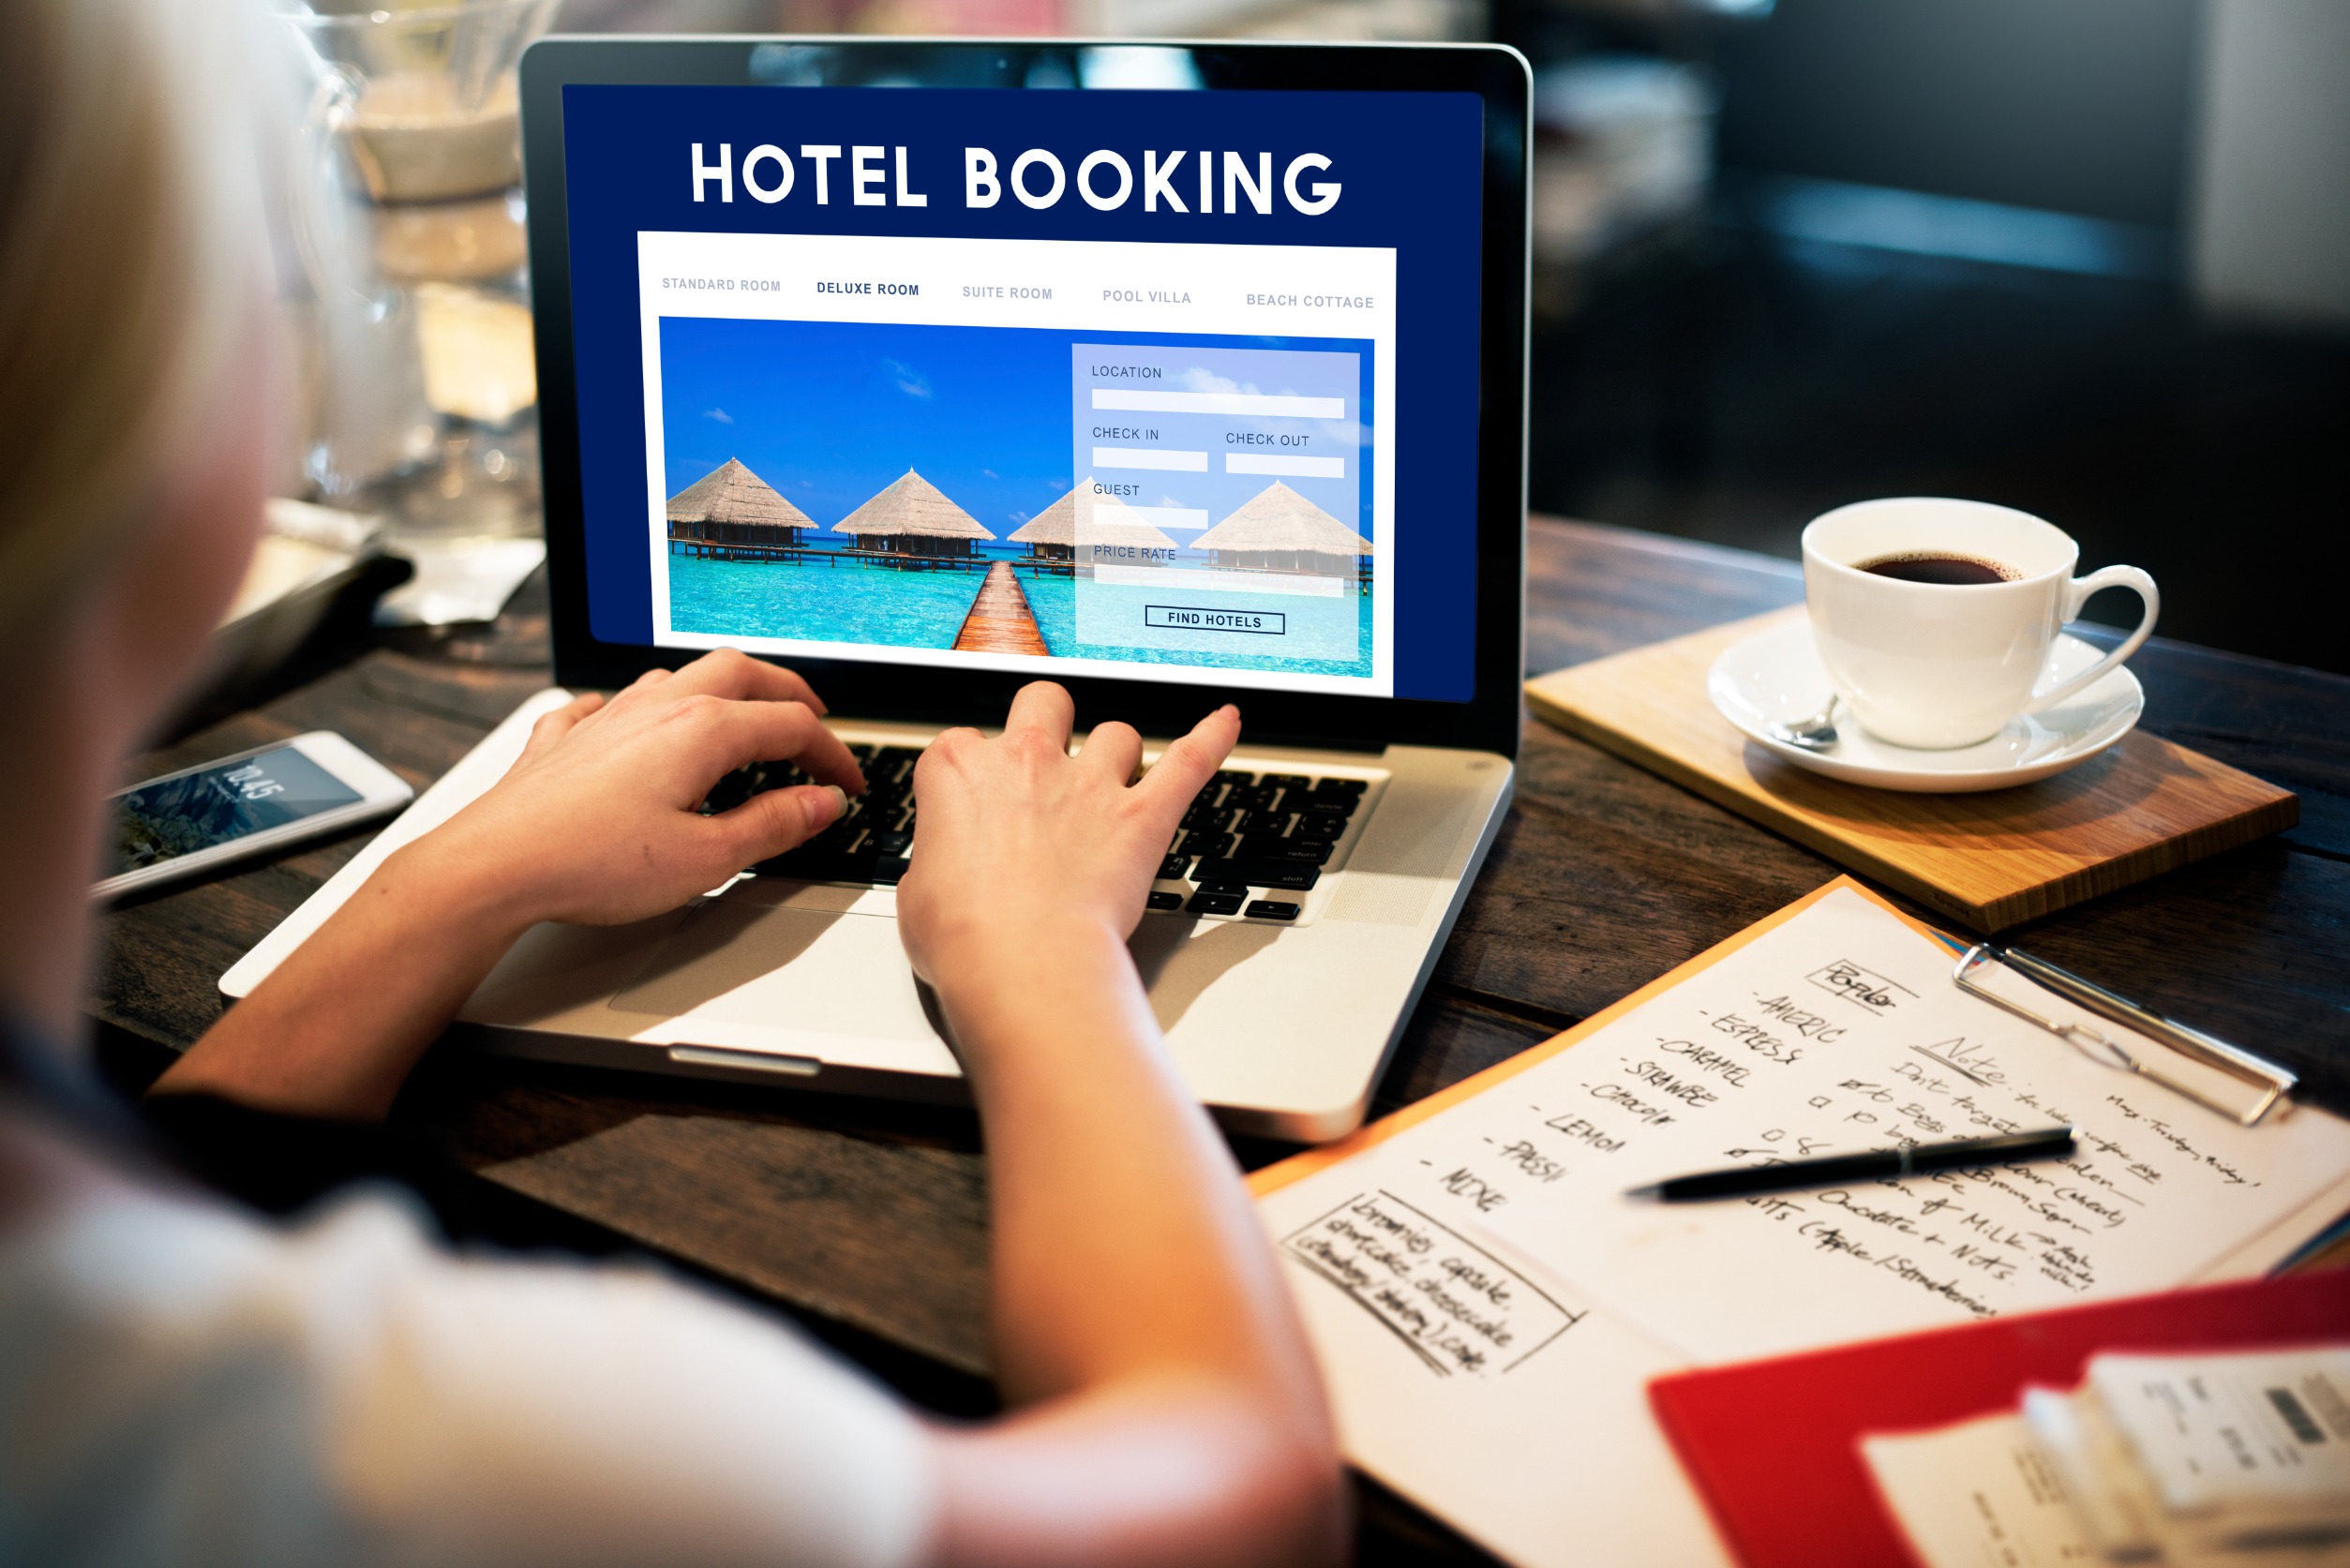 hotel bookings